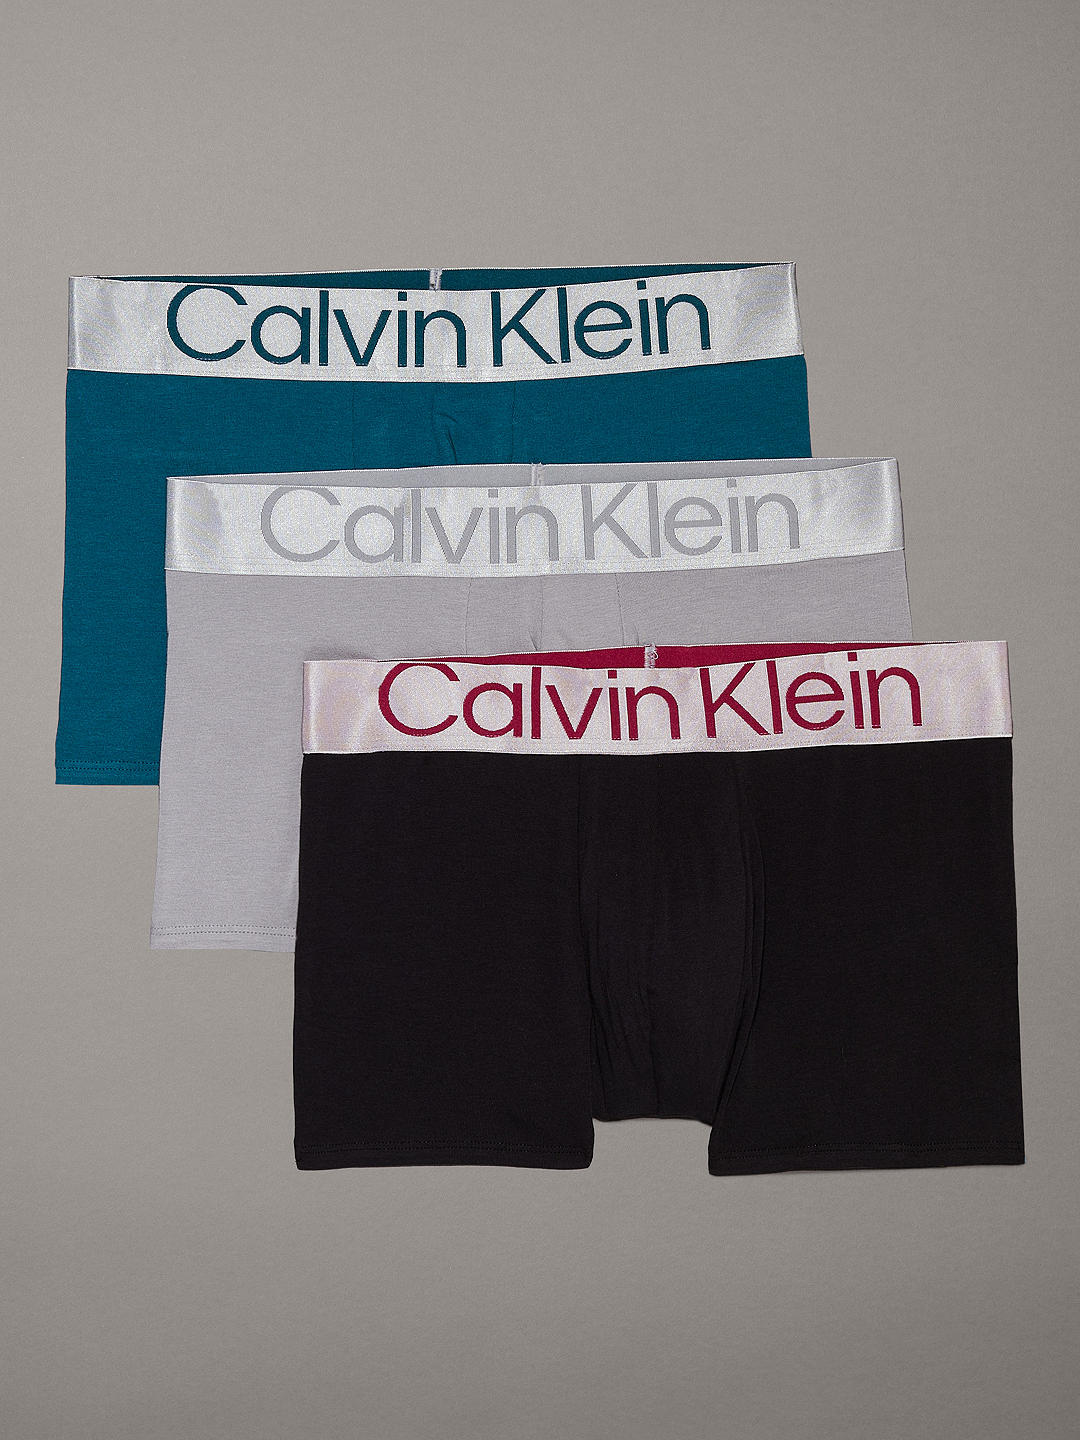 Calvin Klein Classic Trunks, Pack of 3, Black/Green/Multi